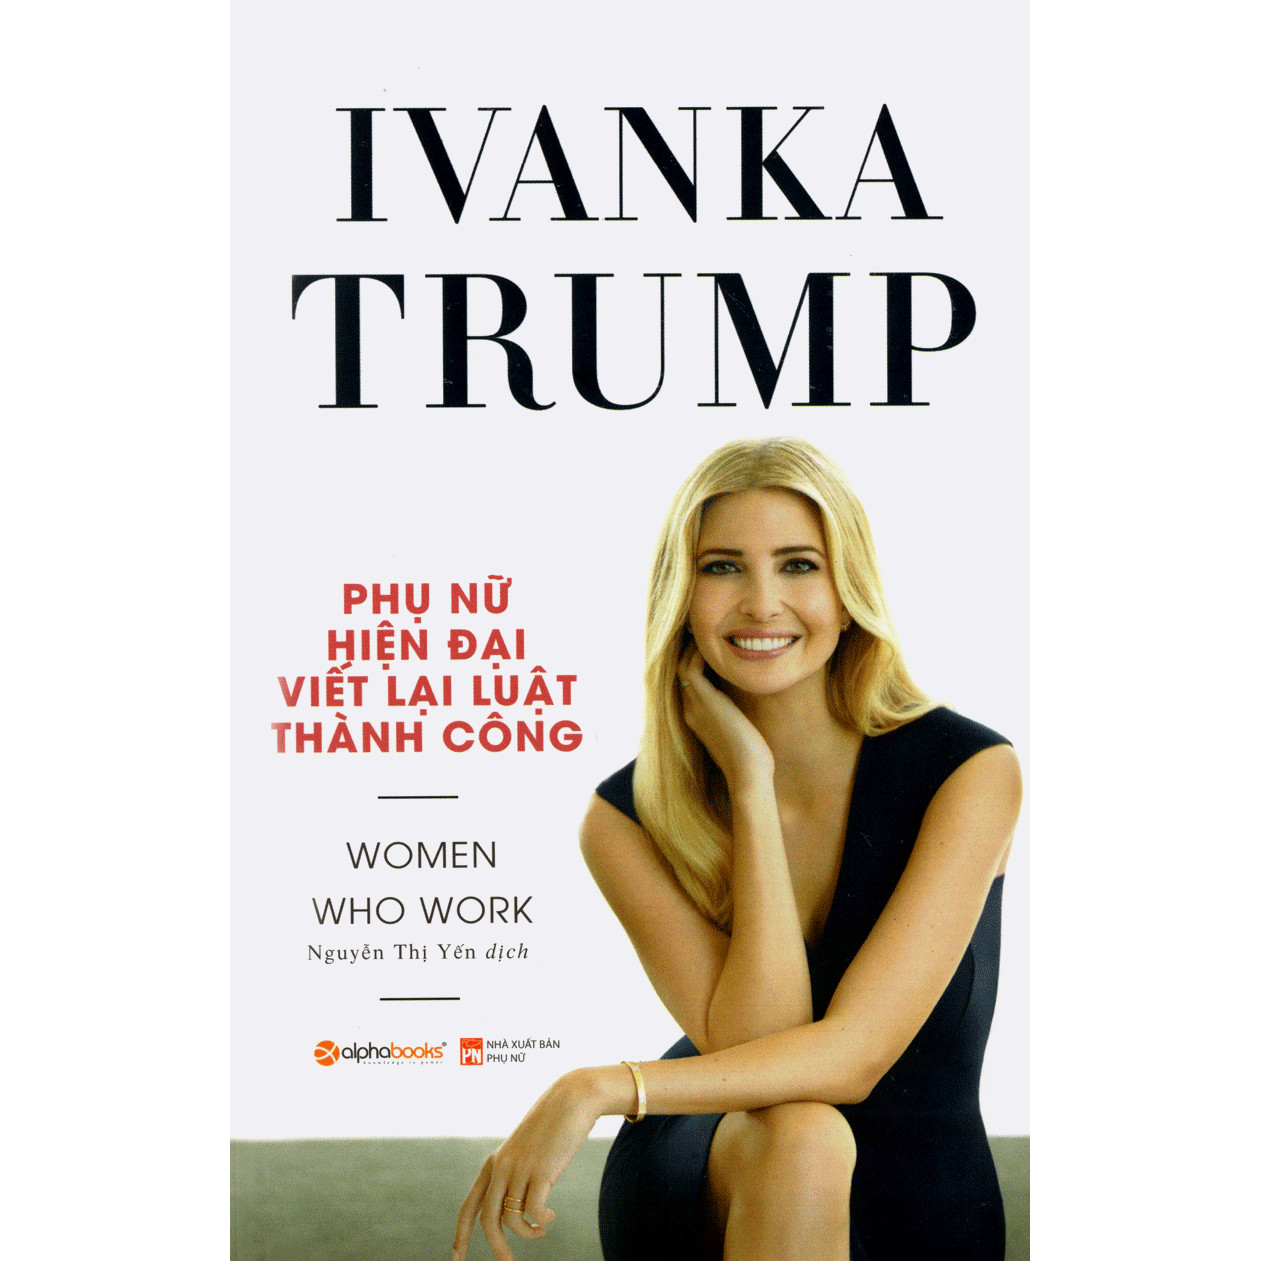 Ivanka Trump - Phụ Nữ Hiện Đại Viết Lại Luật Thành Công; Tặng Kèm BookMark